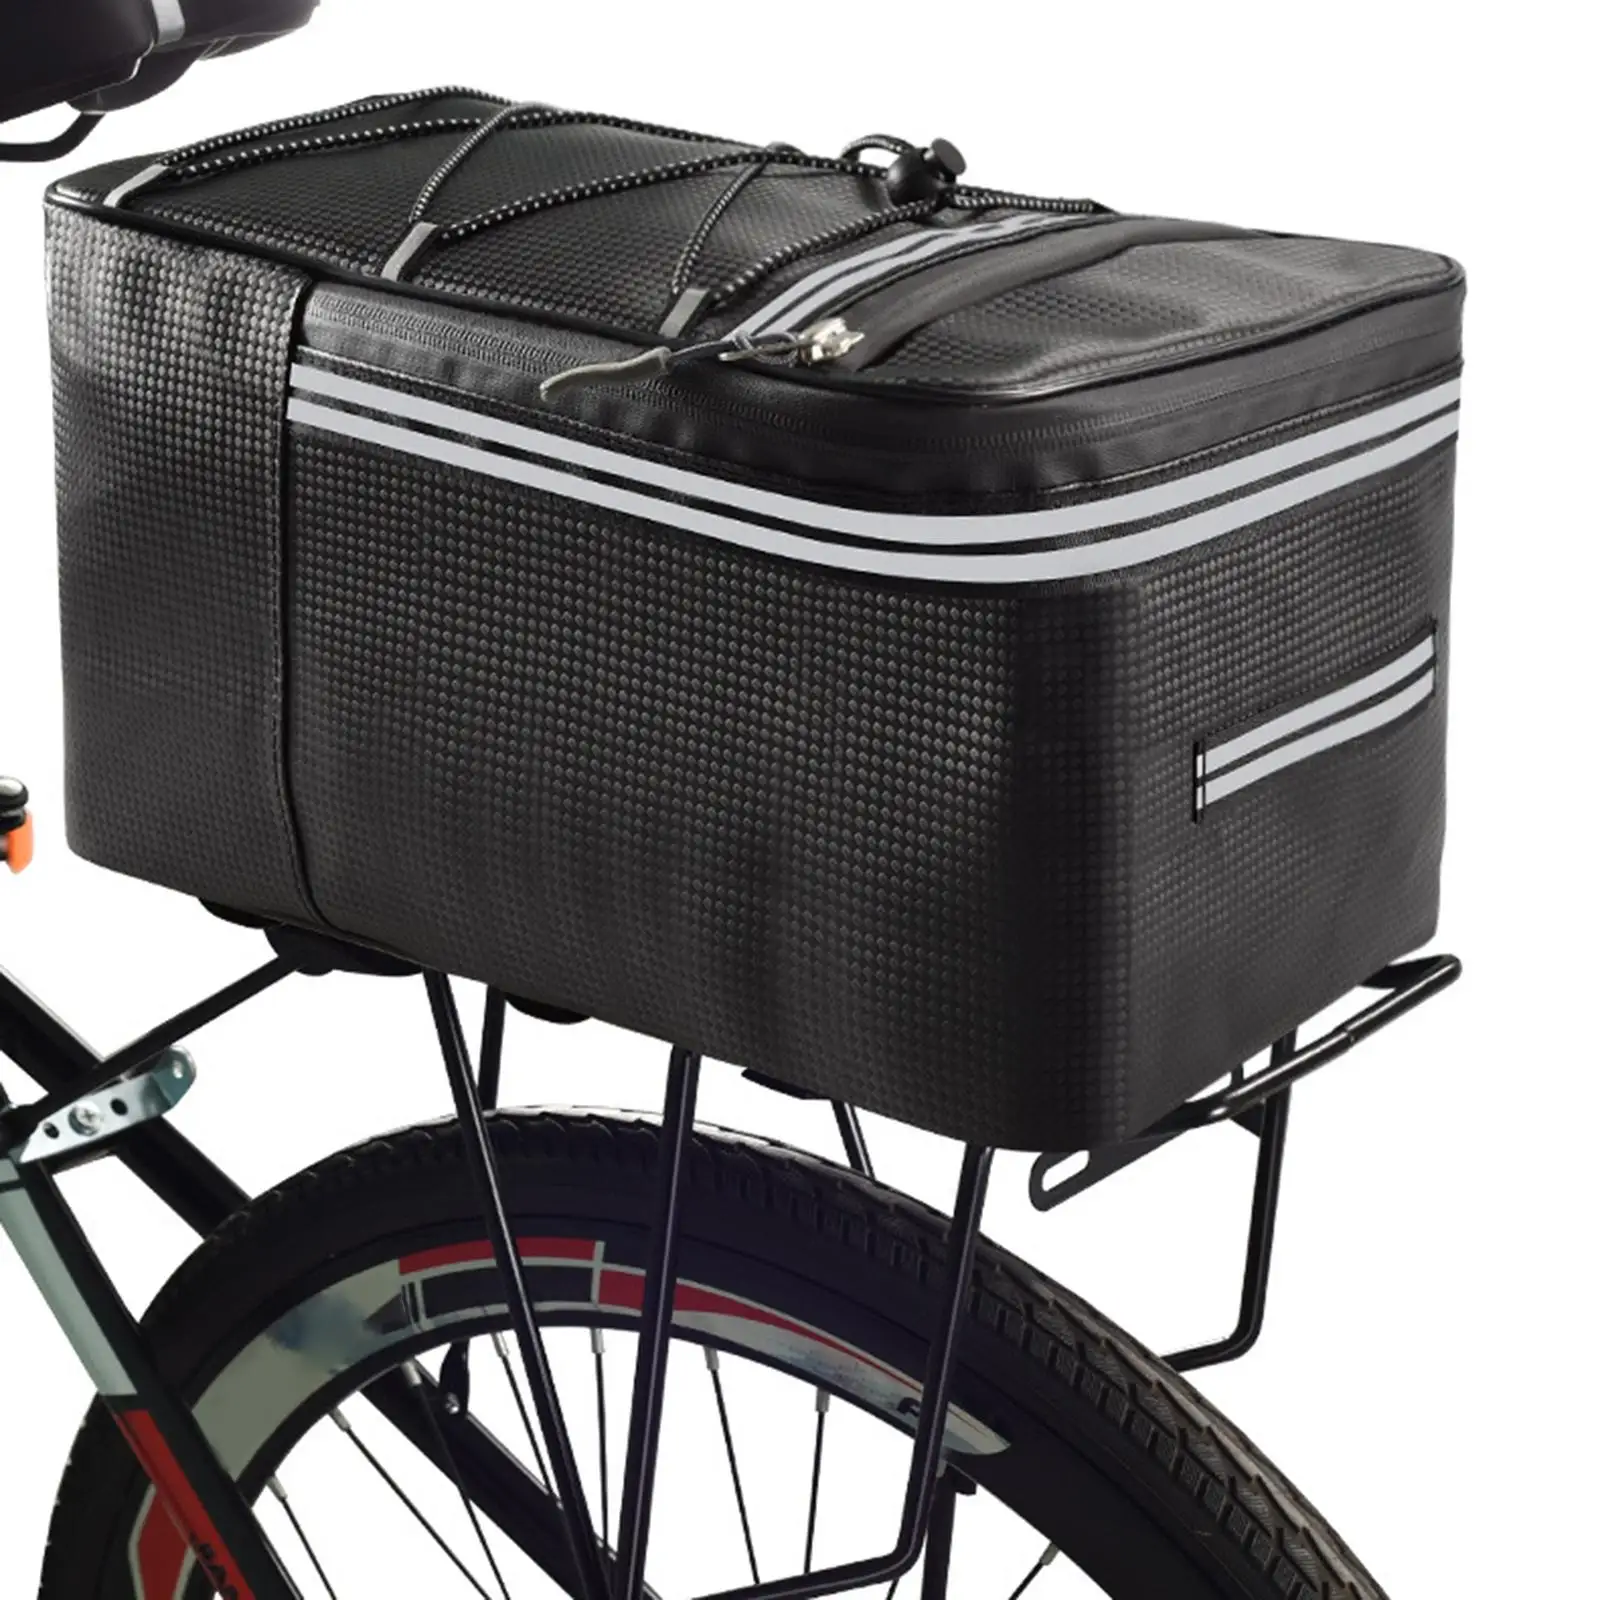 Bike Trunk Bags Bike Rack Rear Seat Bags Bike Pannier Bag Waterproof Carrier Pack Handbag Luggage Package for Traveling Cycling